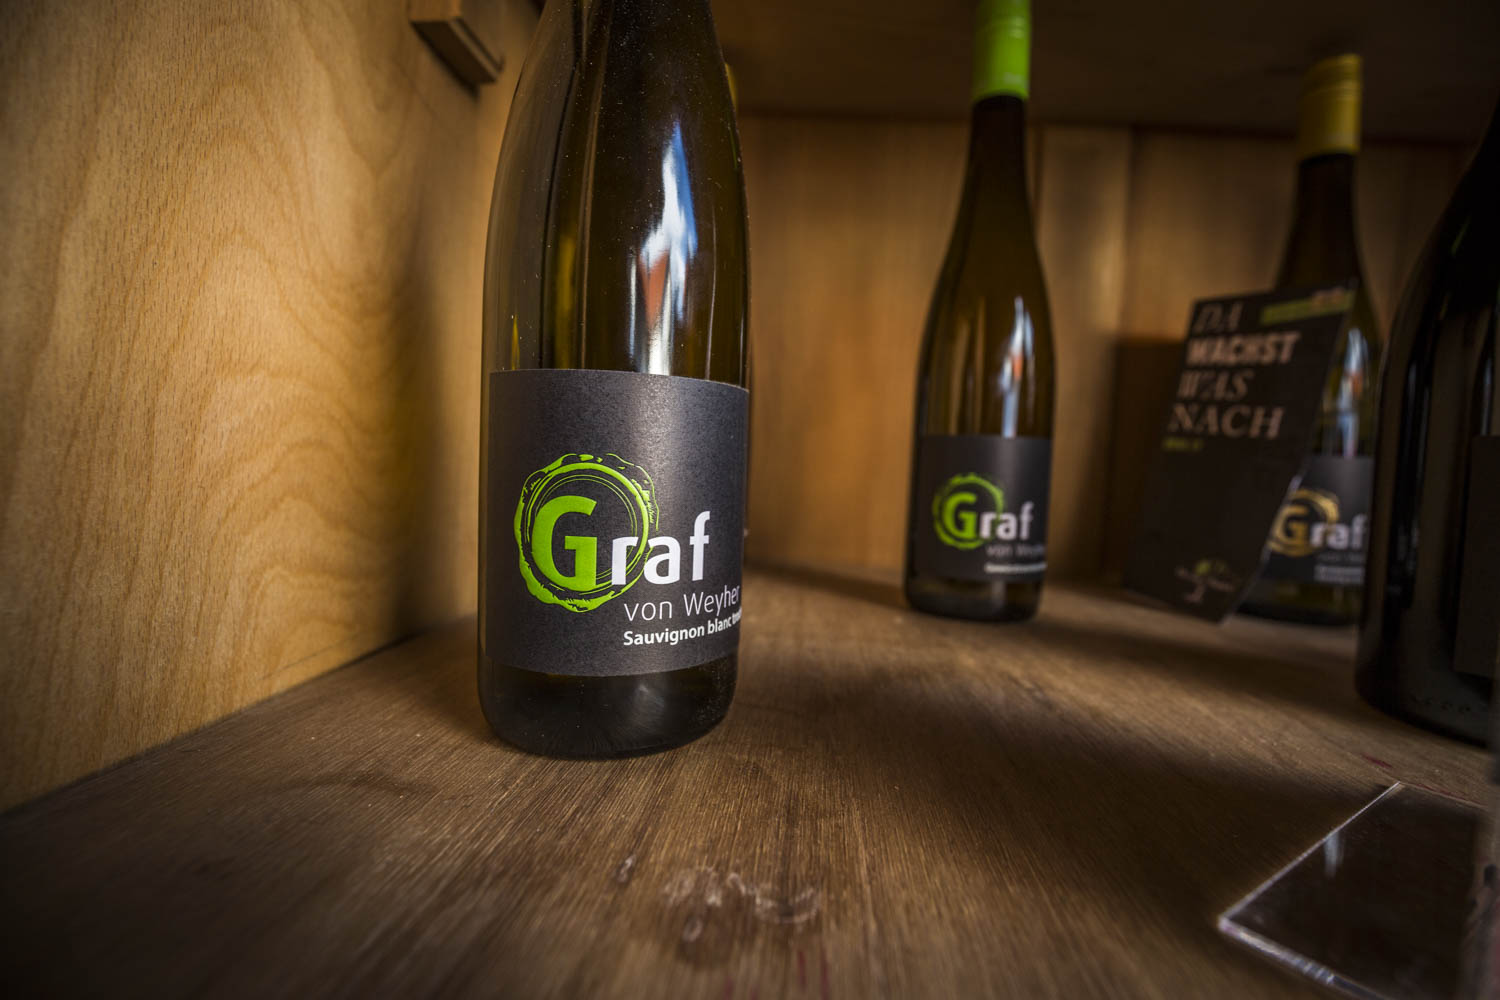 von White wine Weyher Graf – Weingut